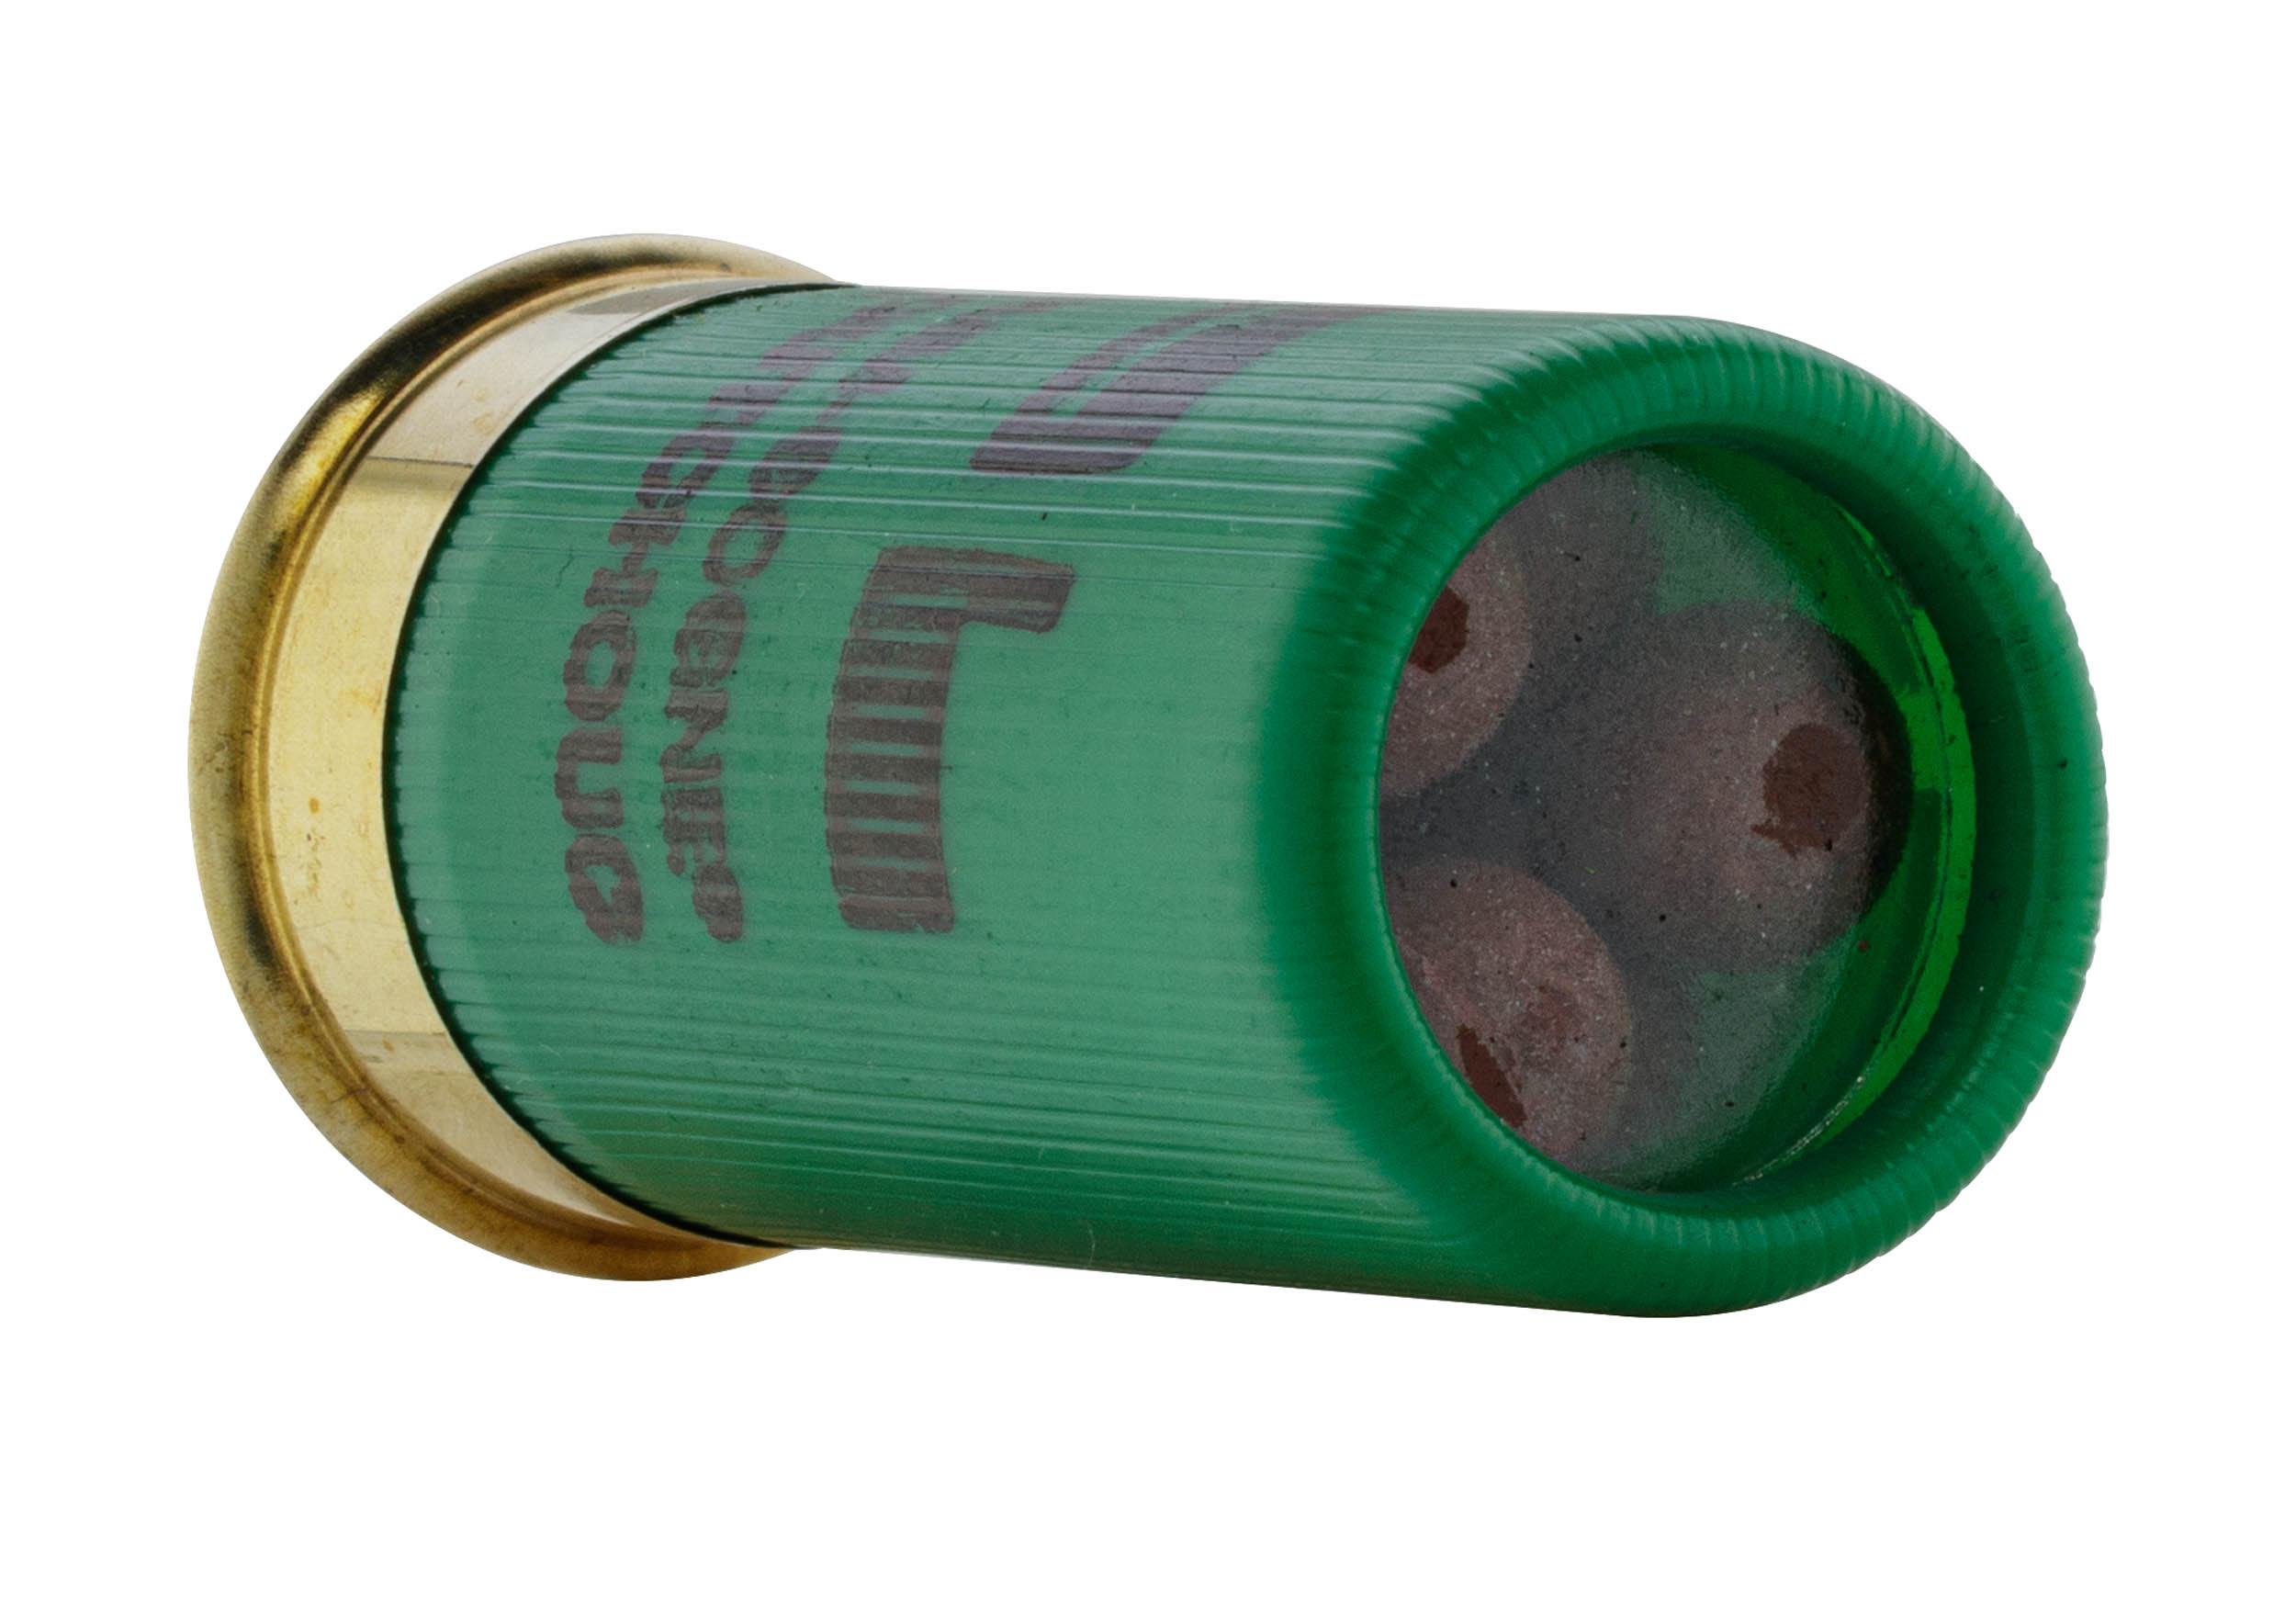 MD4211-06 SAPL - Mini Gomm-Cogne® Chevrotine calibre 12/50 SAPL